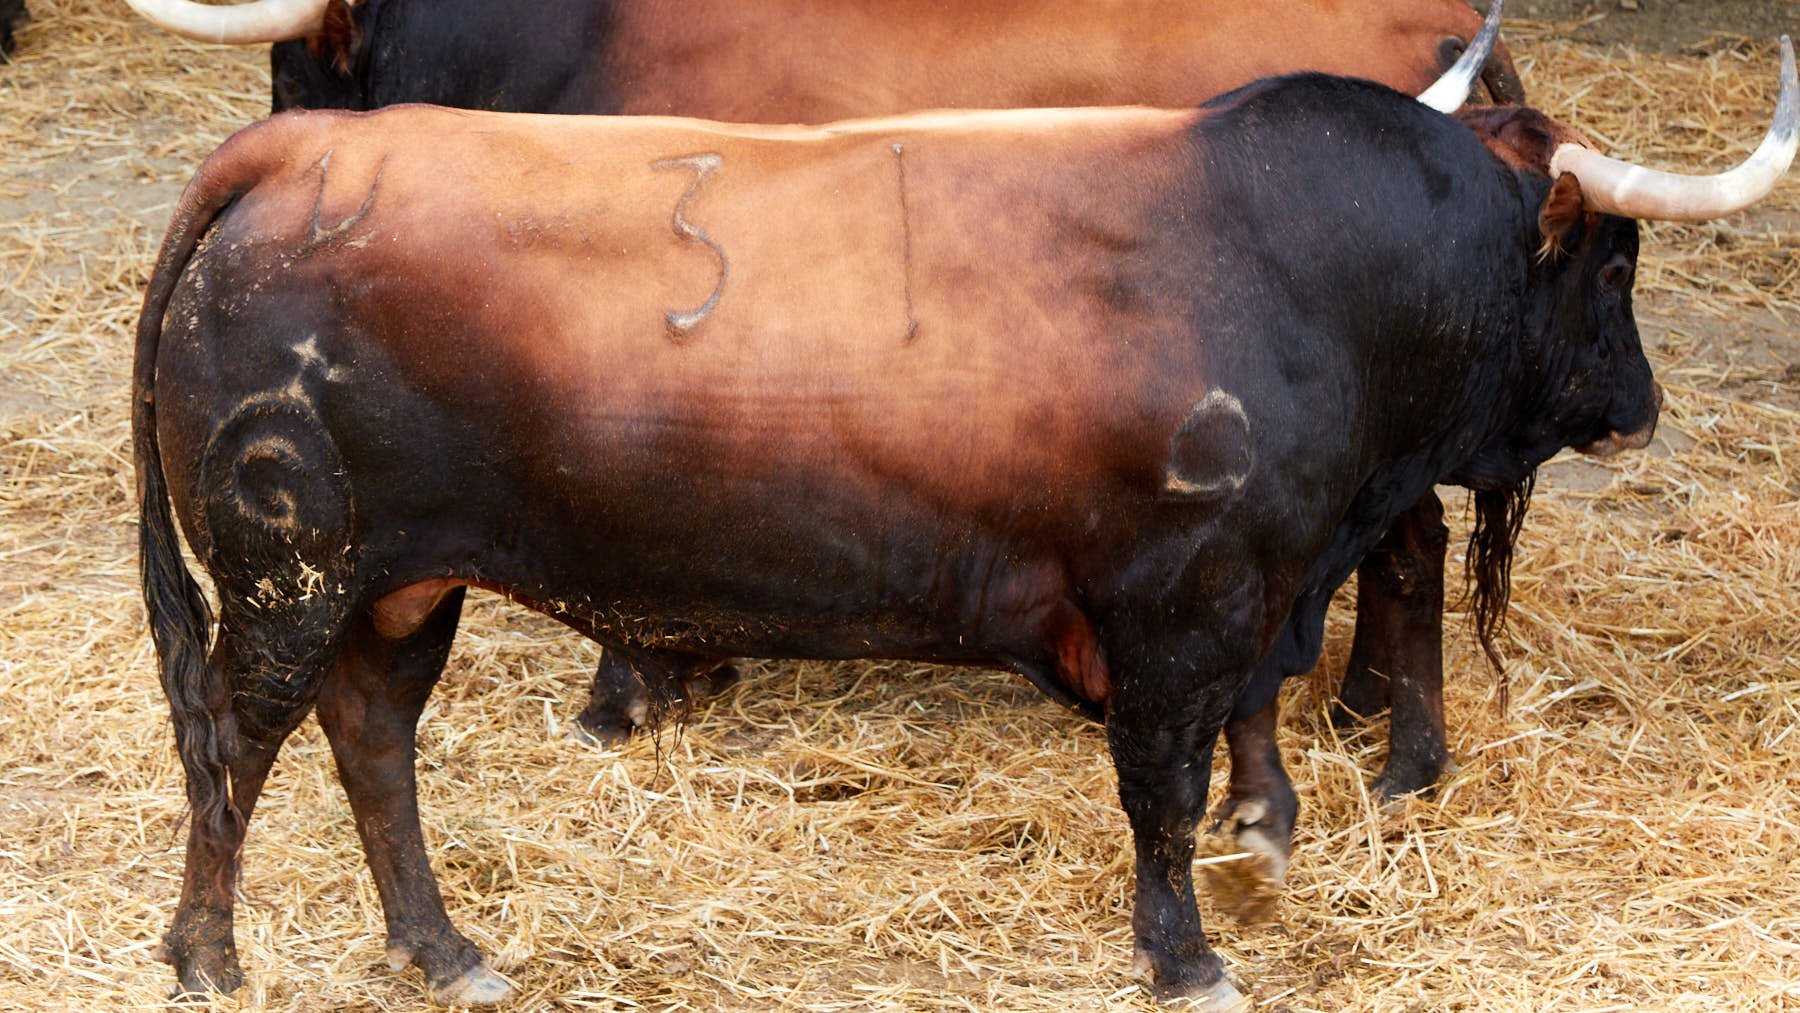 El toro Judío (nº 31) de la ganadería de Fuente Ymbro (10 de julio) y de 590 kilos de peso en los corrales del Gas de Pamplona. IÑIGO ALZUGARAY